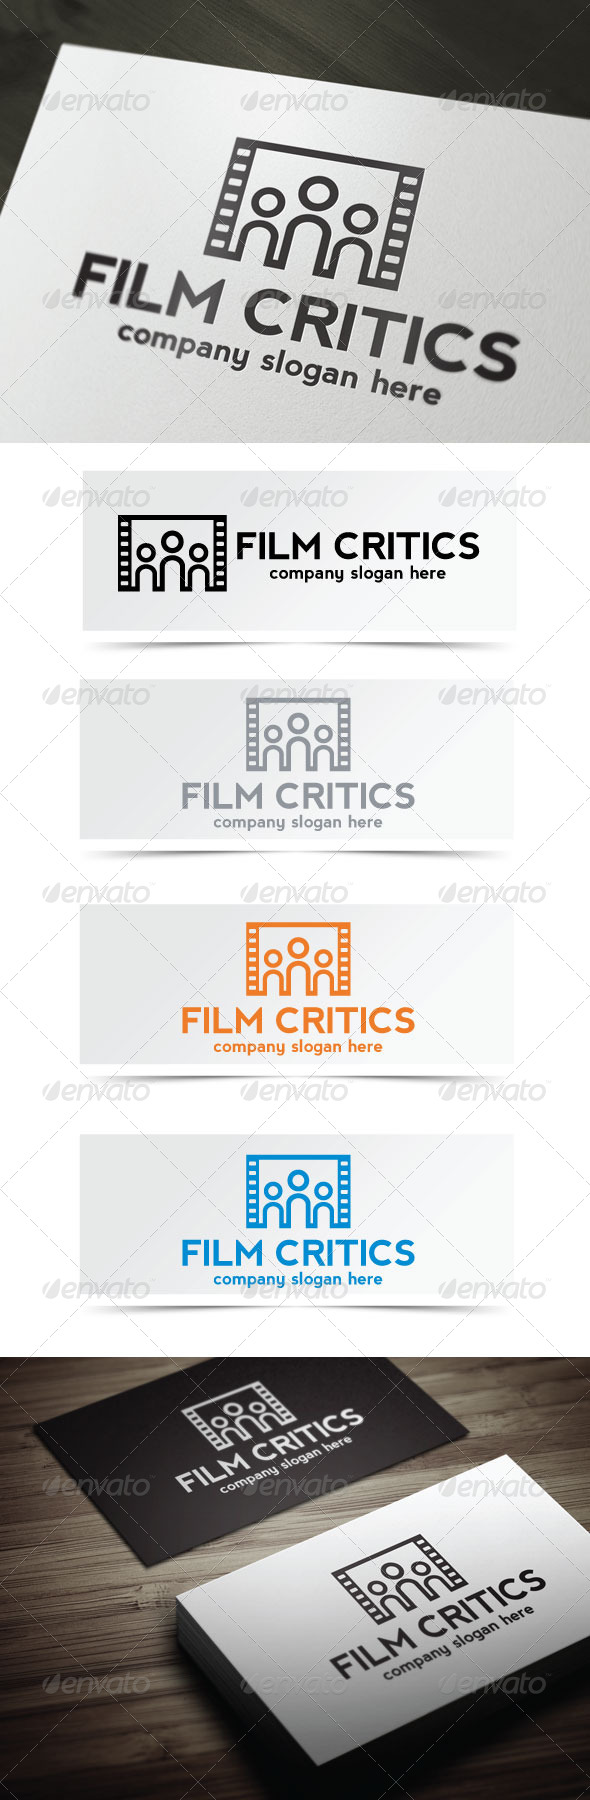 Film Critics